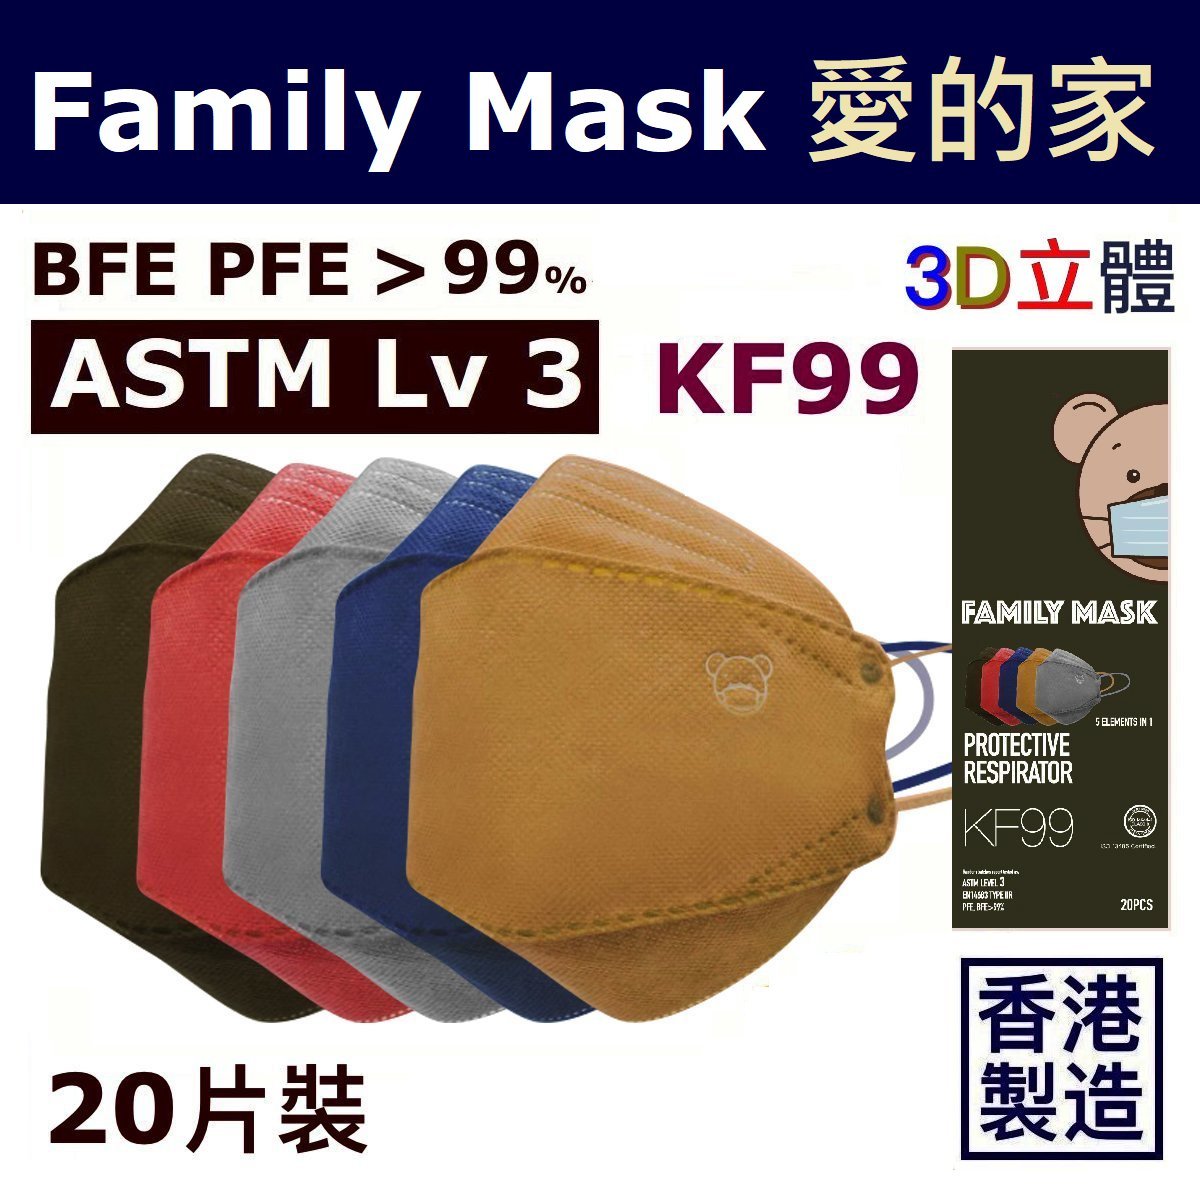 Kf99 mask